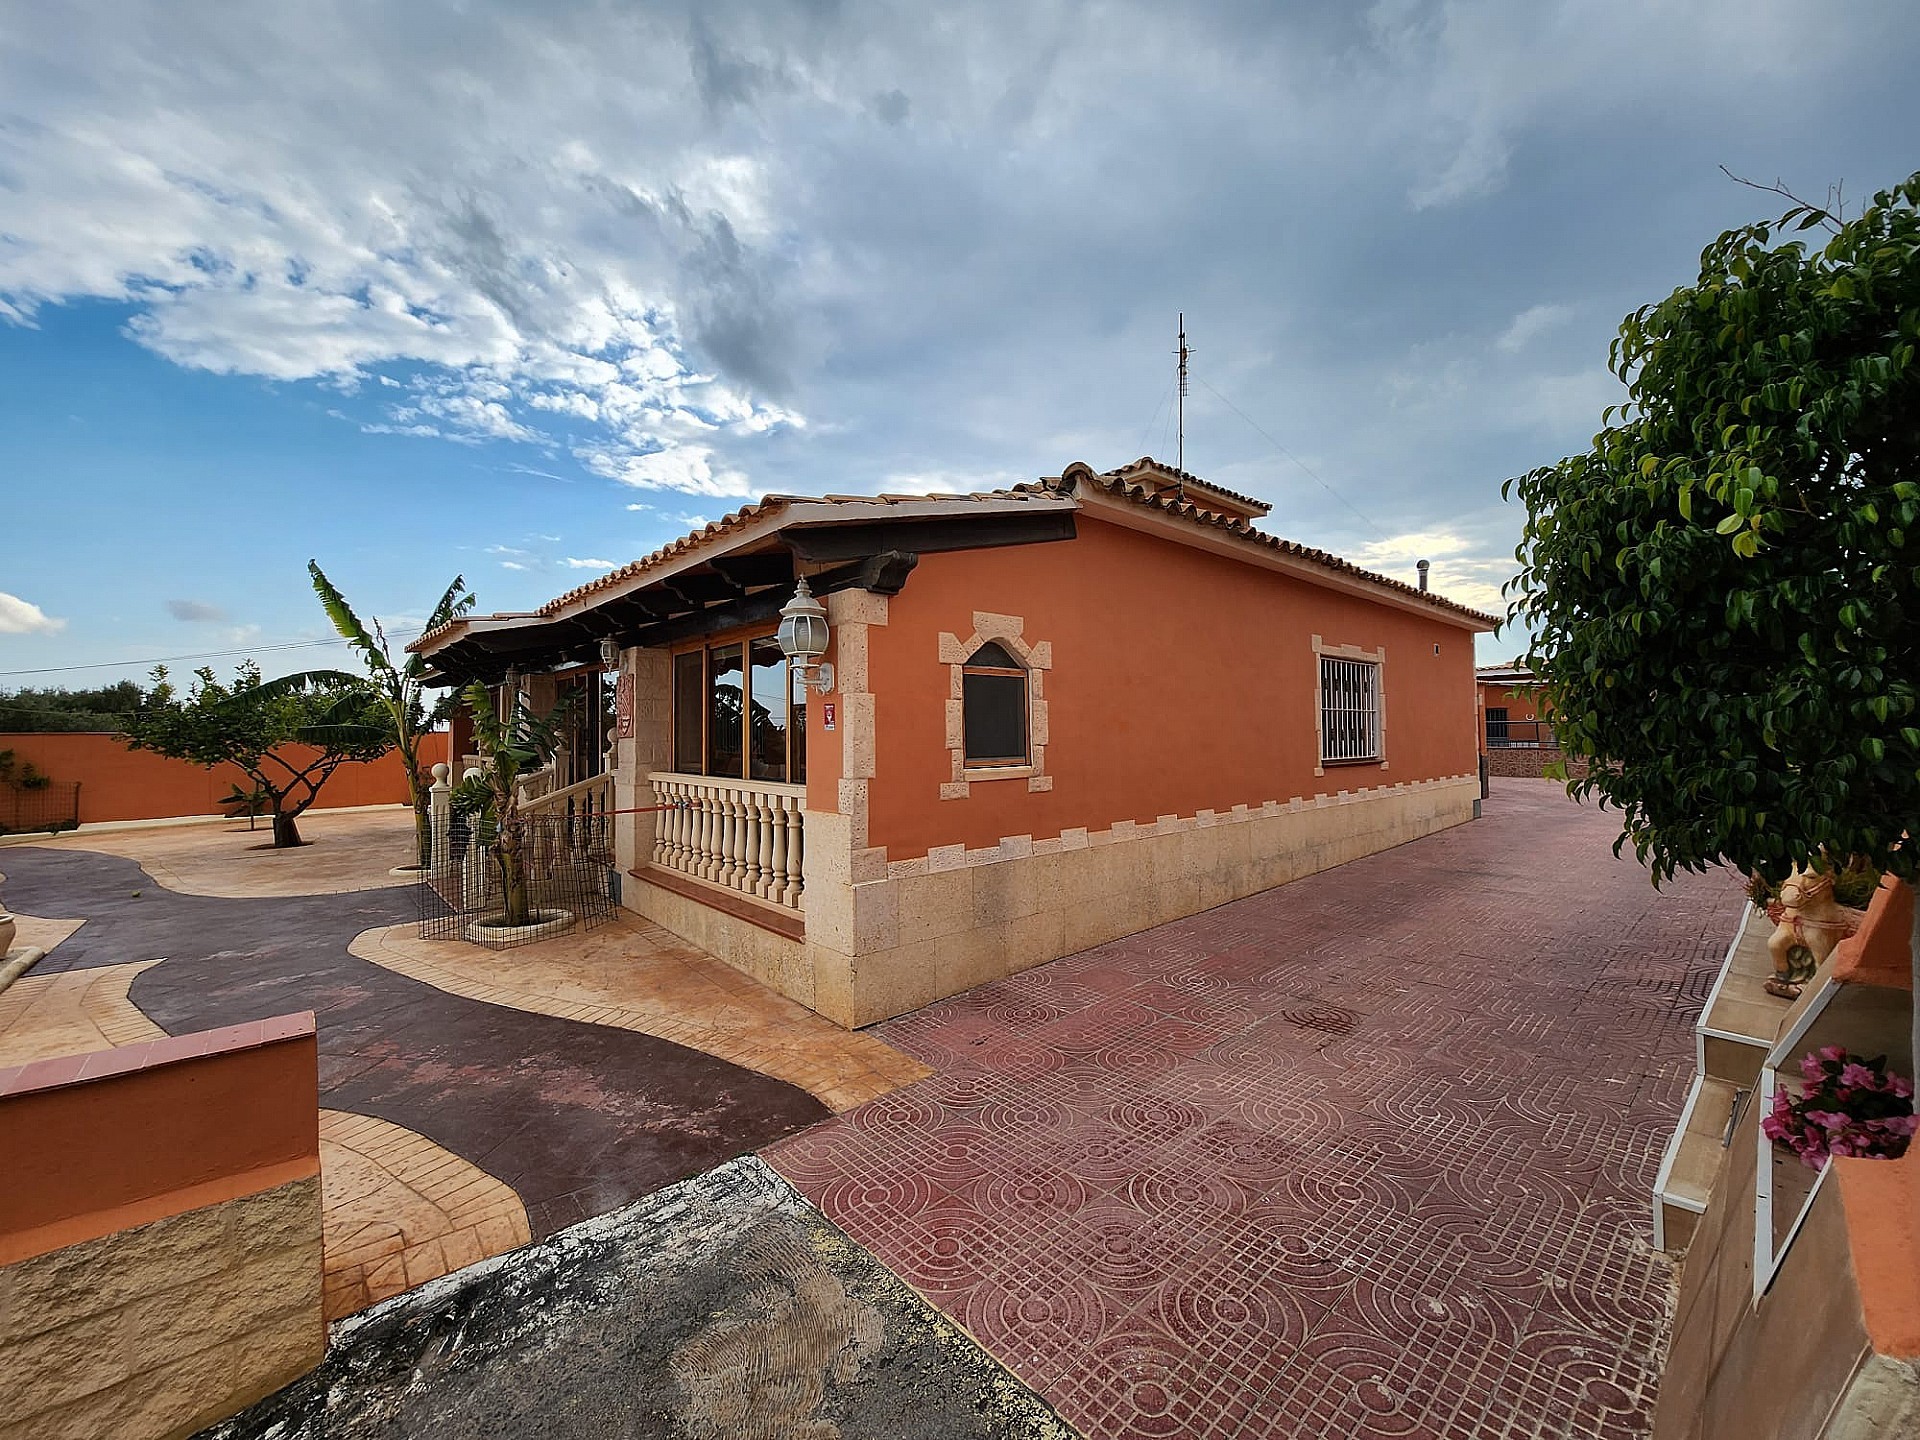 4 bedroom house / villa for sale in San Vicente del Raspeig, Costa Blanca